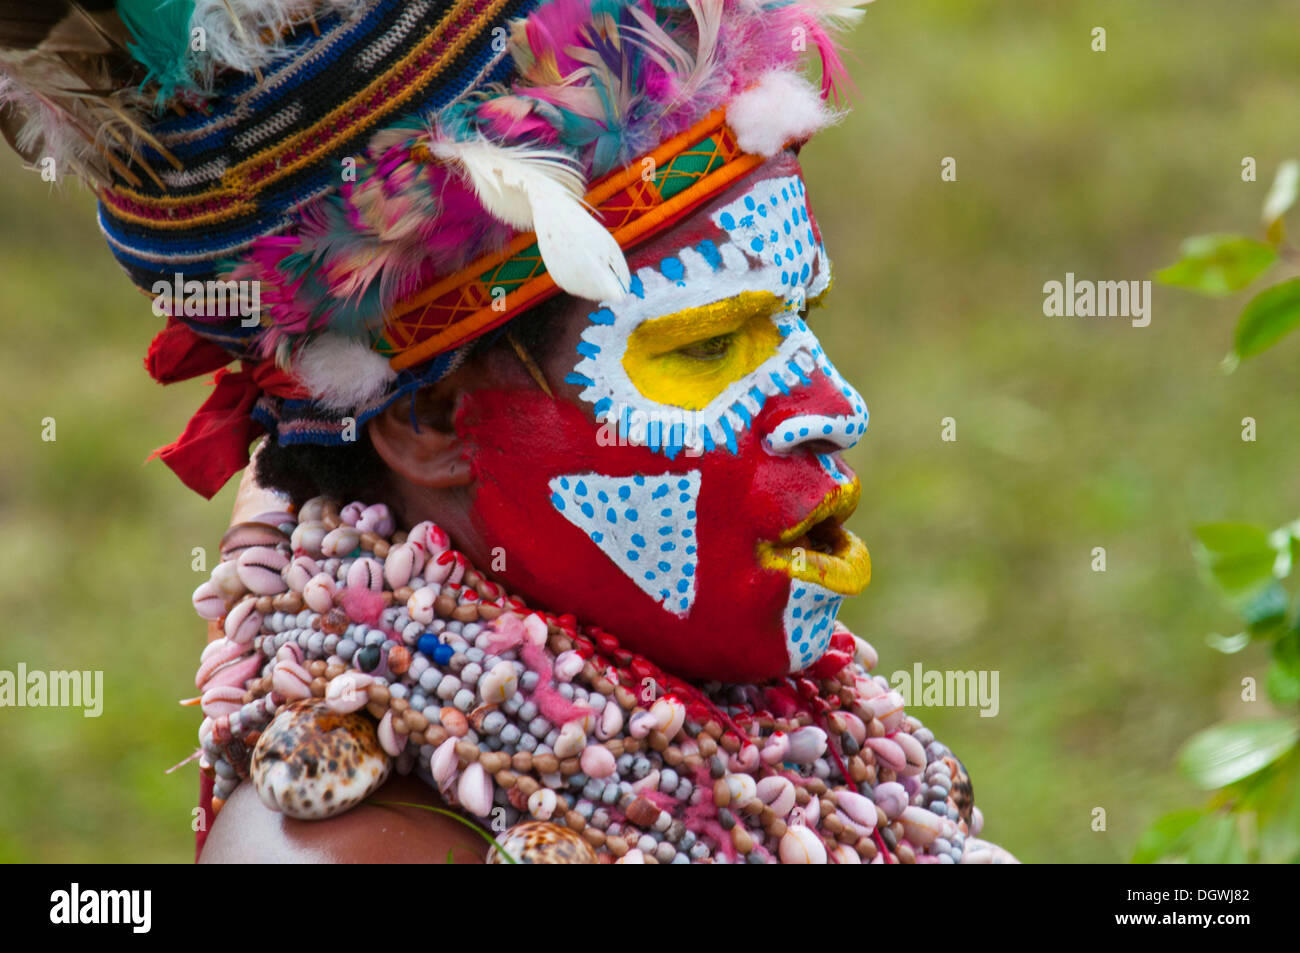 Membre d'une tribu dans un costume à la décoration colorée avec la peinture pour le visage à la traditionnelle collecte sing-sing, Hochland Banque D'Images